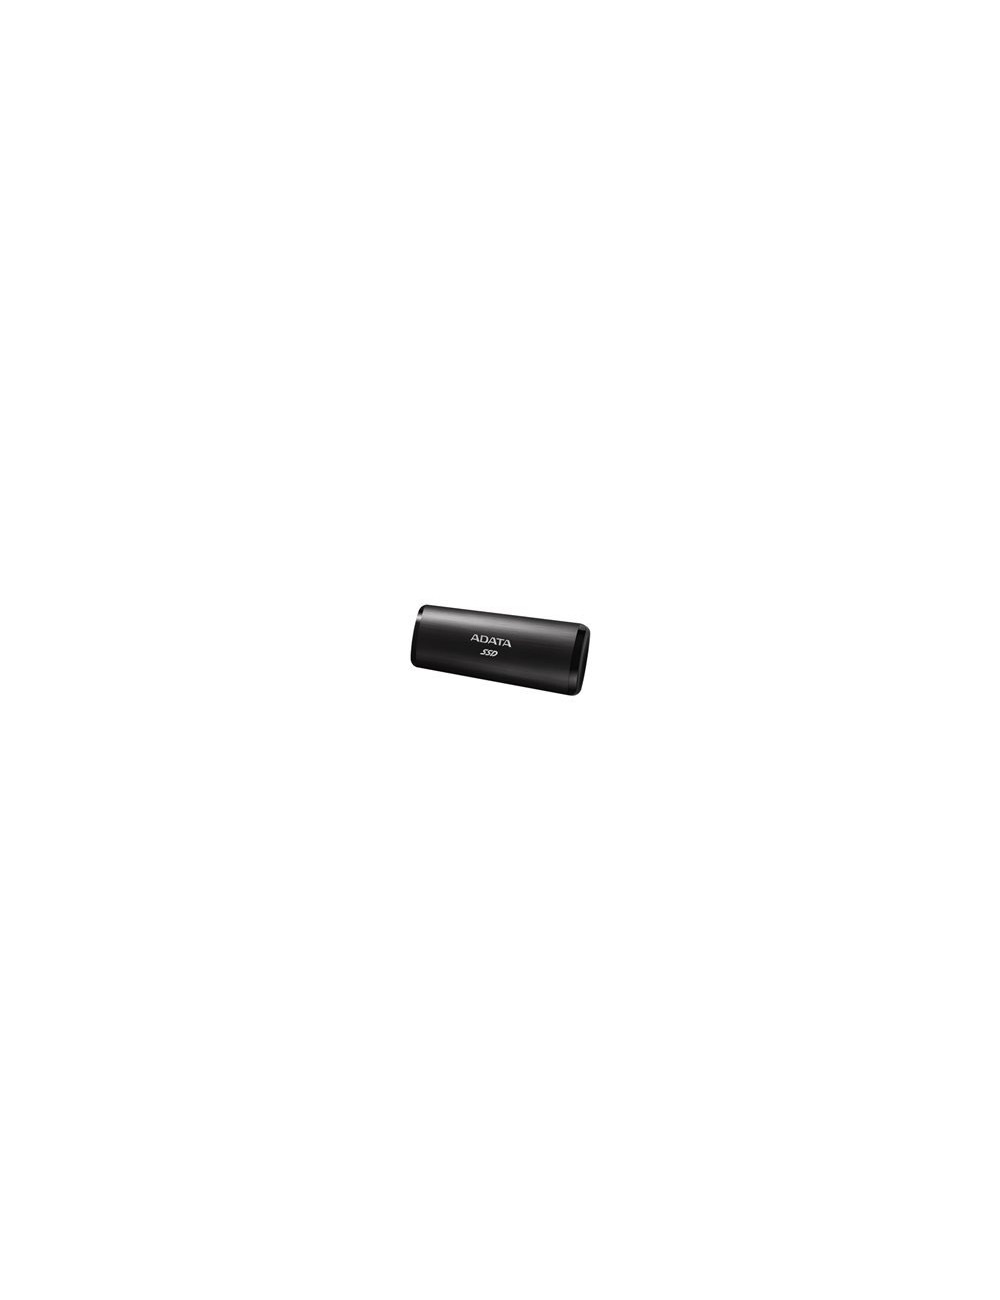 ADATA External SSD SE760 2TB Black